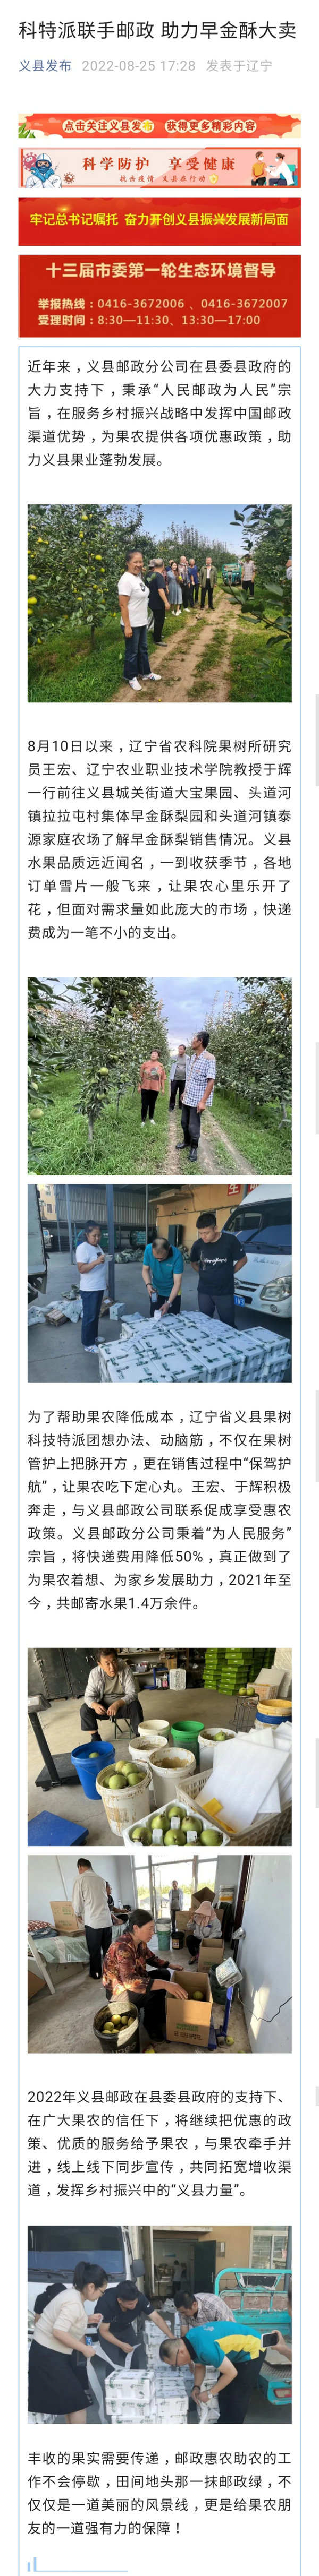 义县发布微信公众号——科特派联手邮政 助力早金酥大卖.jpg